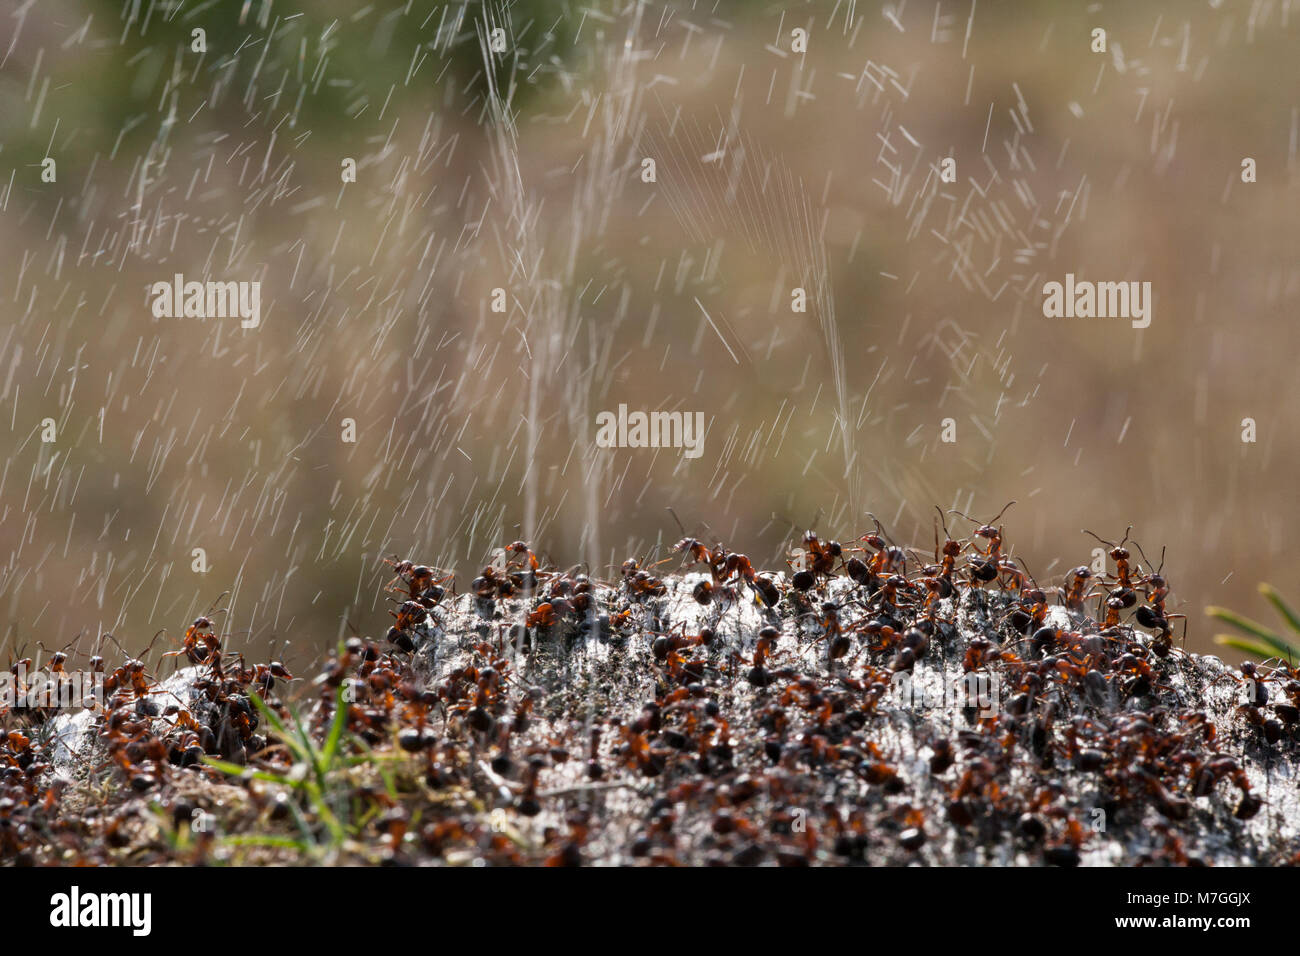 Legno di formiche formica rufa-per difendere il loro nido per la Spruzzatura di acido formico. L'acido formico è utilizzato per scoraggiare qualsiasi attaccando i predatori. Il Dorset England Regno Unito GB. Foto Stock